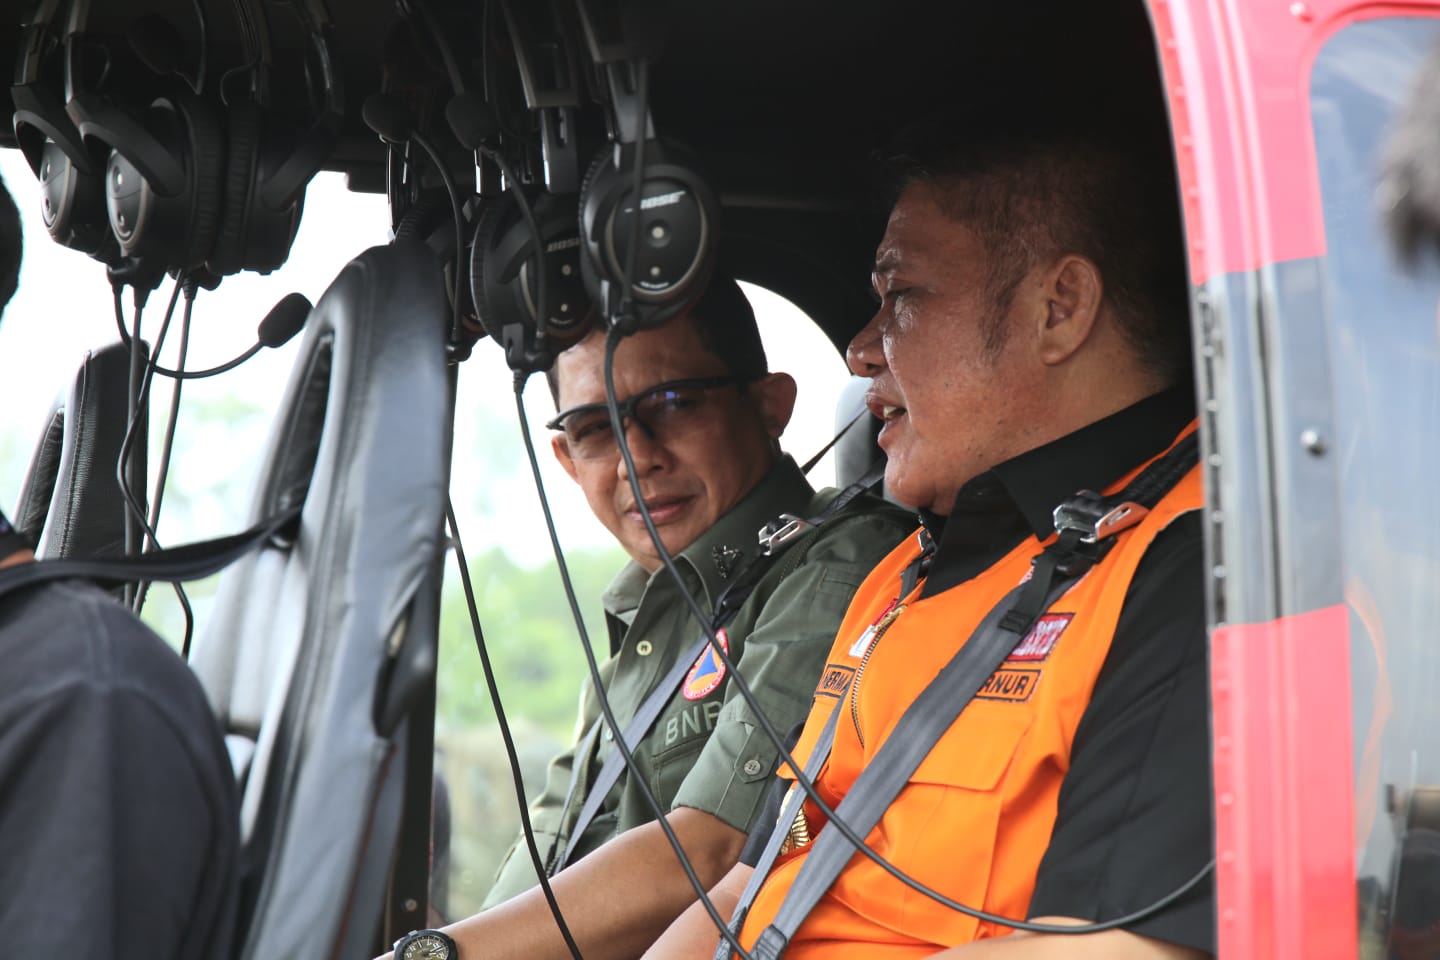 Kepala BNPB Letjen TNI Suharyanto (kemeja dan rompi hijau) beserta Herman Deru (rompi orange) selaku Gubernur Sumatera Selatan saat bersiap lakukan monitoring penanganan kebakaran hutan dan lahan menggunakan helikopter di wilayah Sumatera Selatan pada Selasa (12/9).